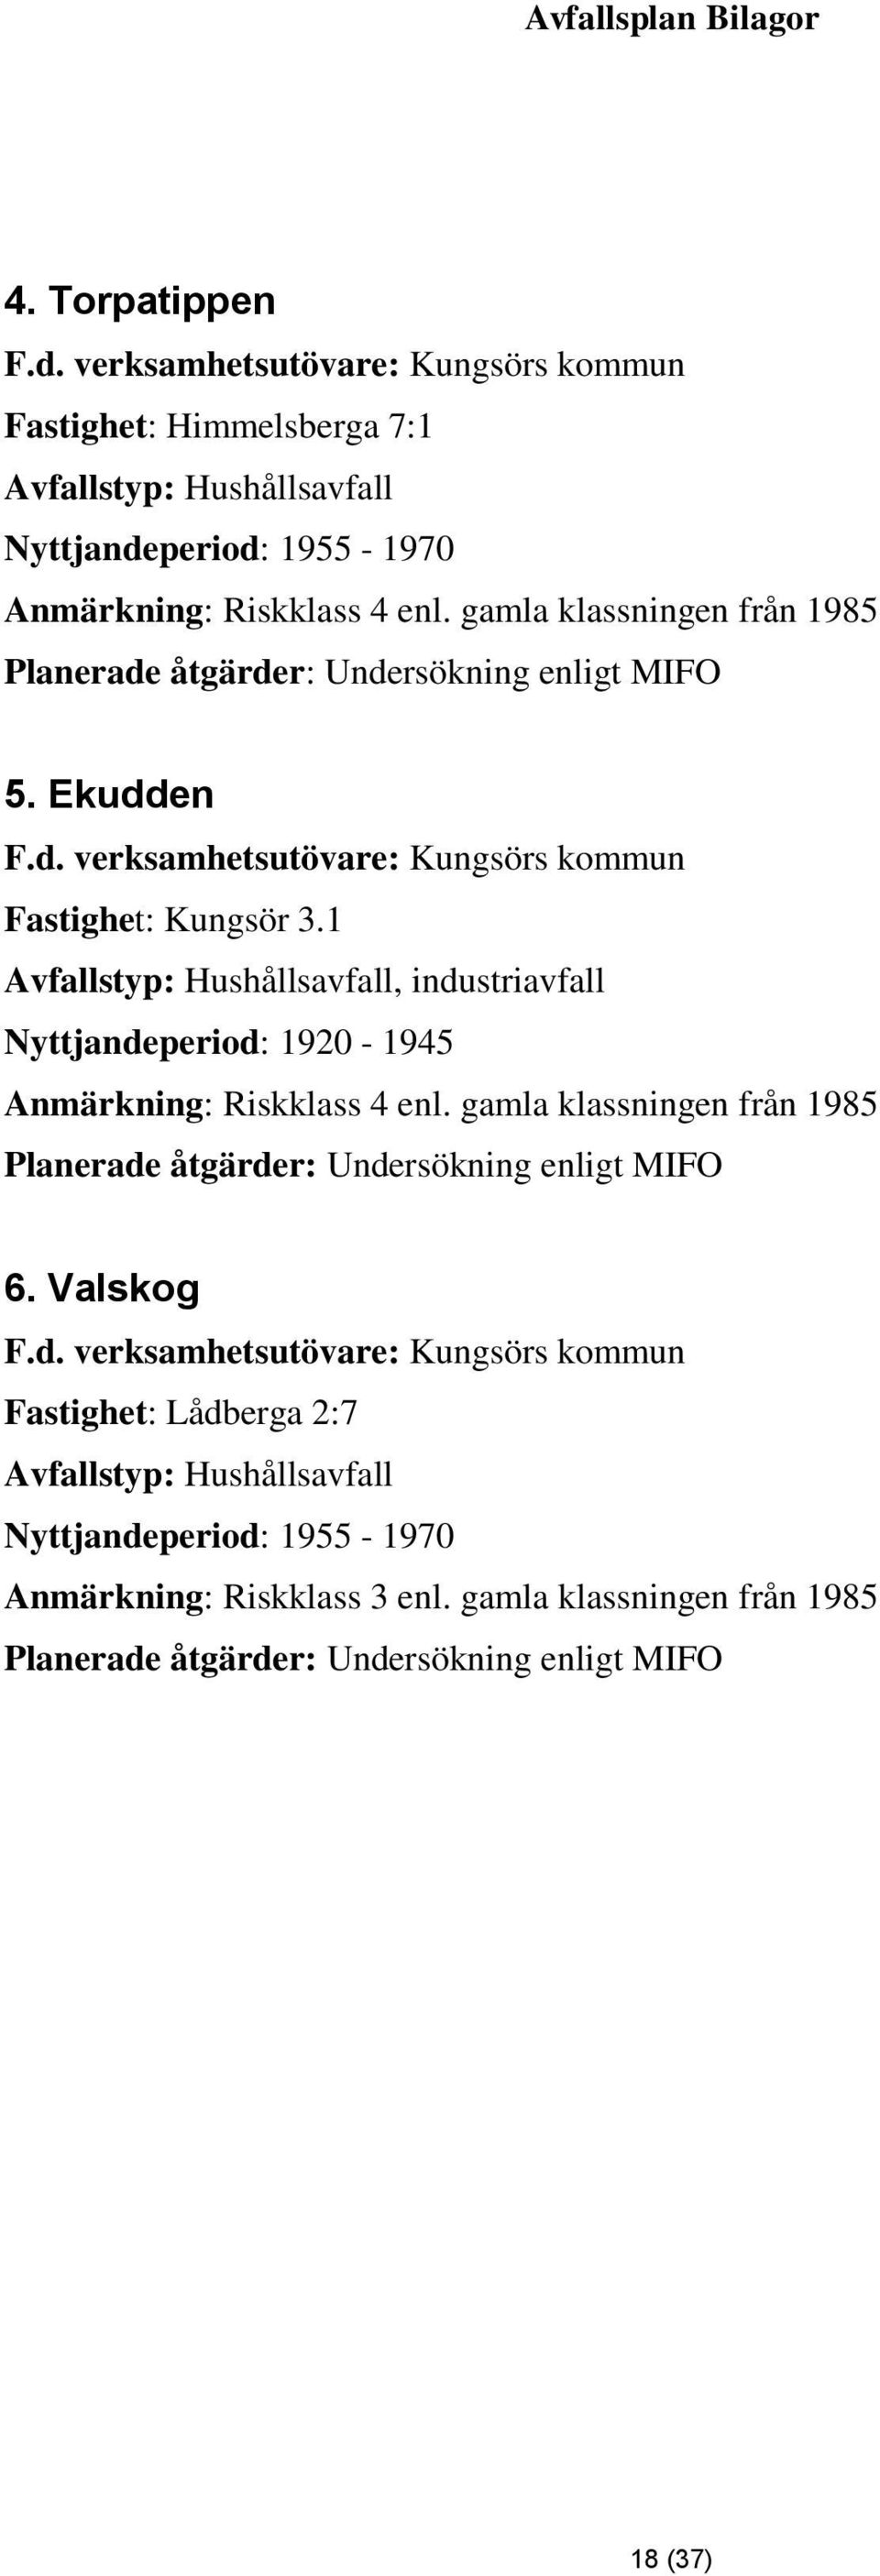 1 Avfallstyp: Hushållsavfall, industriavfall Nyttjandeperiod: 1920-1945 Anmärkning: Riskklass 4 enl. gamla klassningen från 1985 Planerade åtgärder: Undersökning enligt MIFO 6.